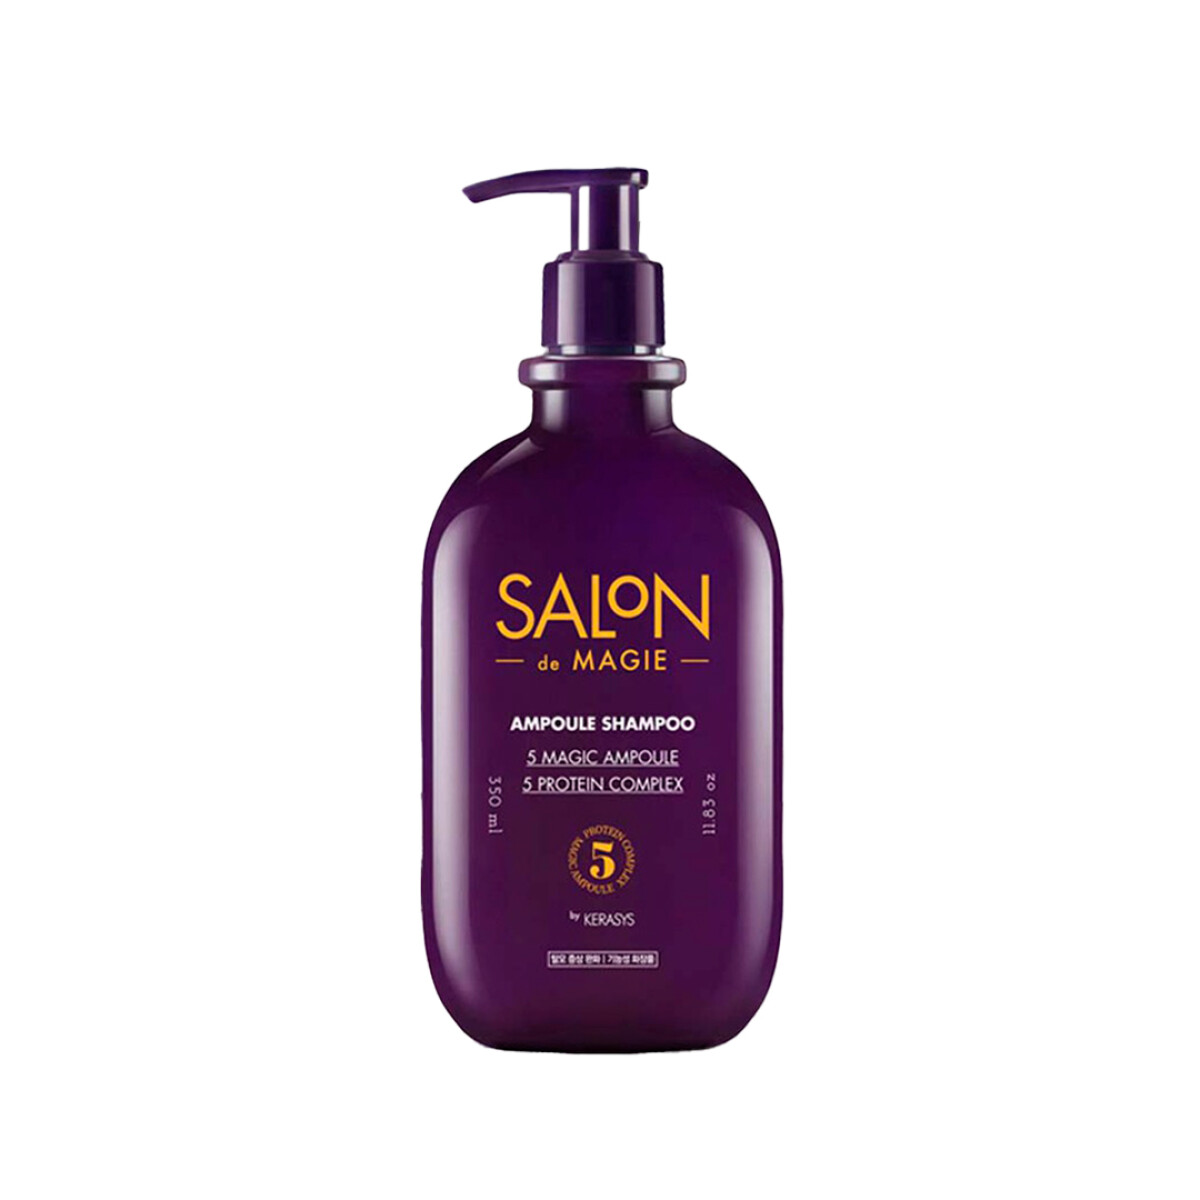 SHAMPOO KERASYS SALON DE MAGIA AMPOULE SHAMPO (350ml) - Shampoo tratamiento para la caída del cabello de puntas 